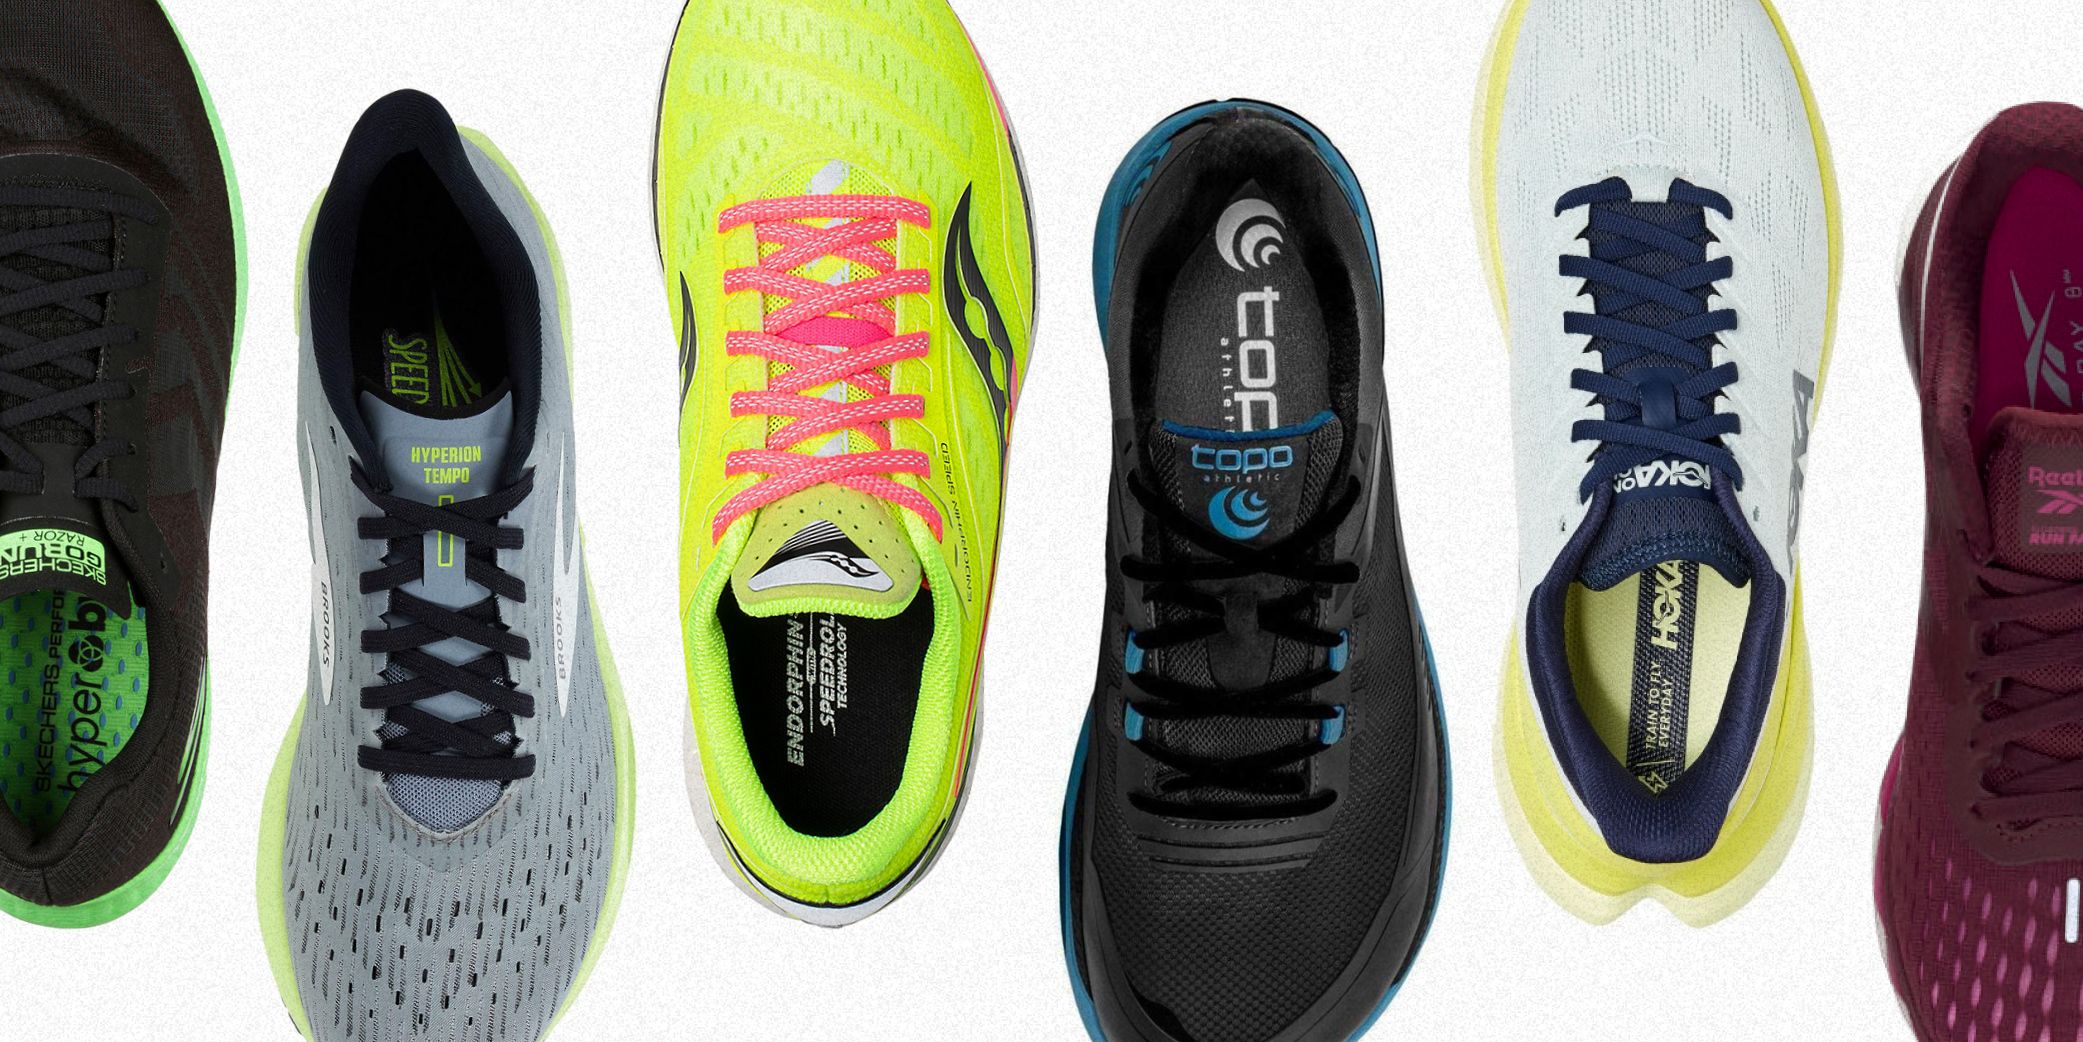 skechers counterpart lightweight running shoes